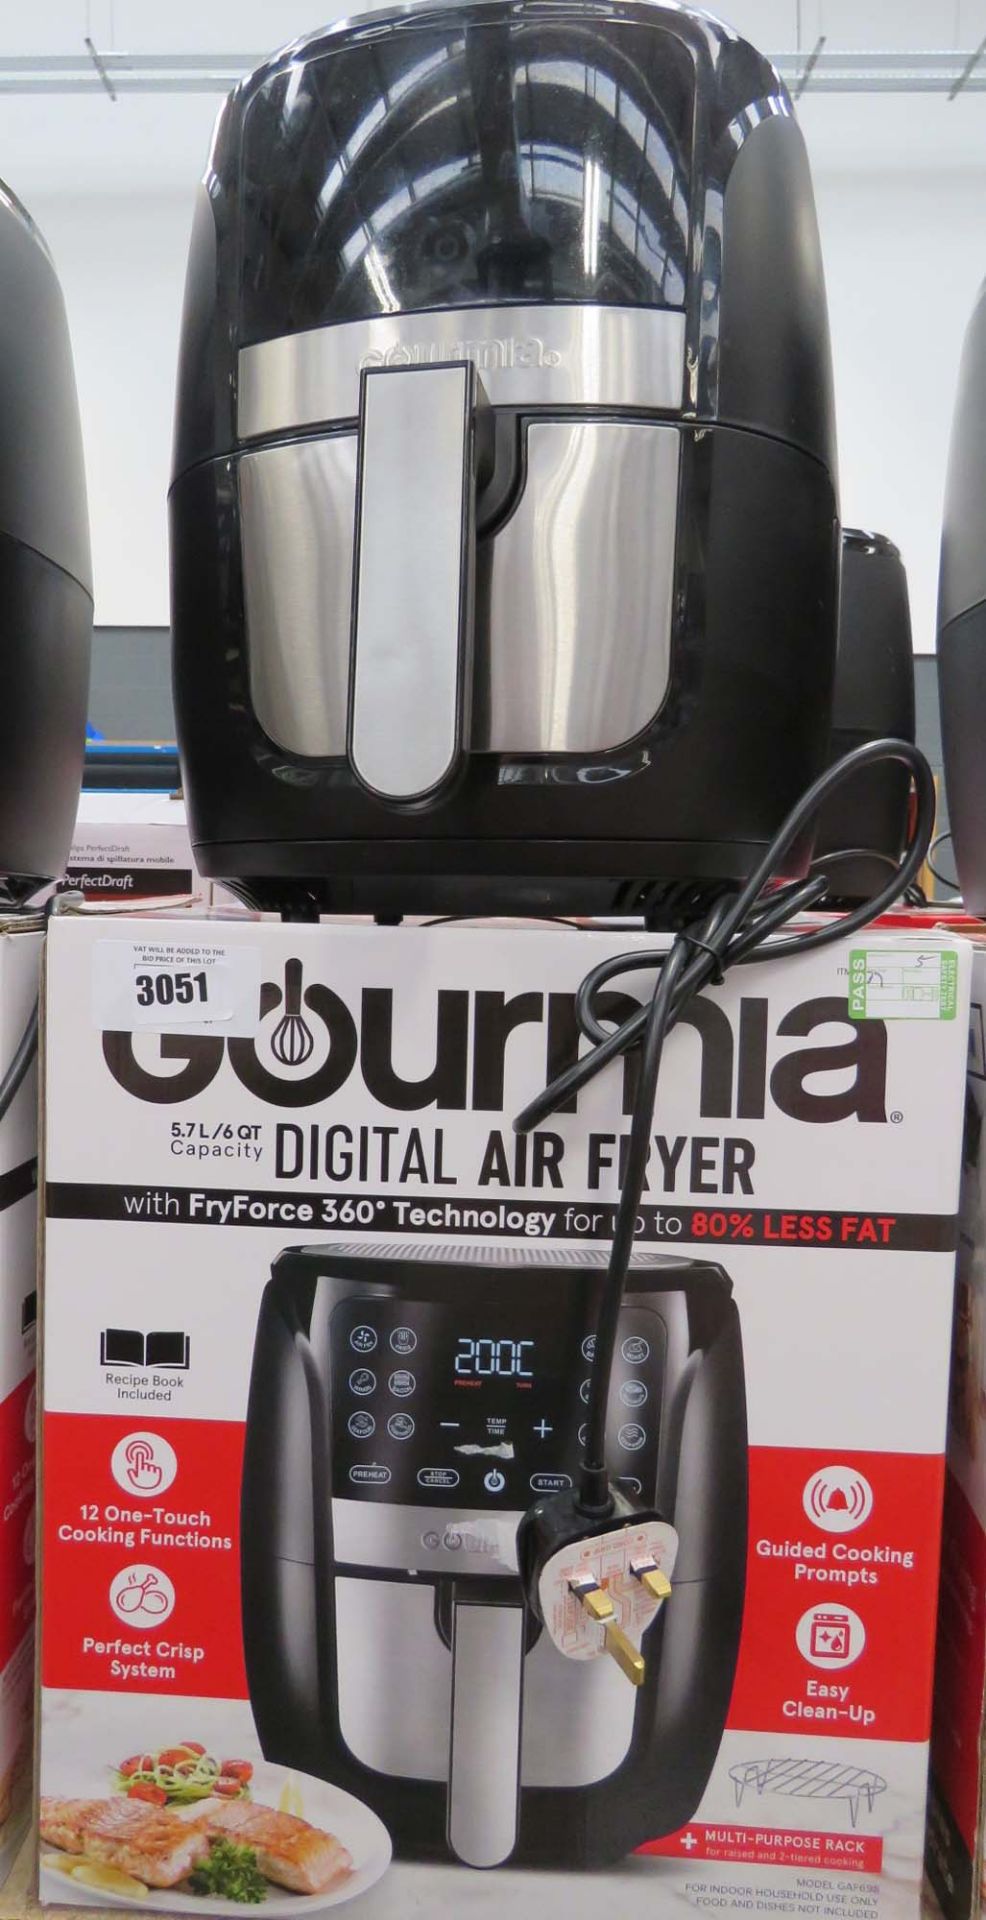 (5) Gourmet digital air fryer